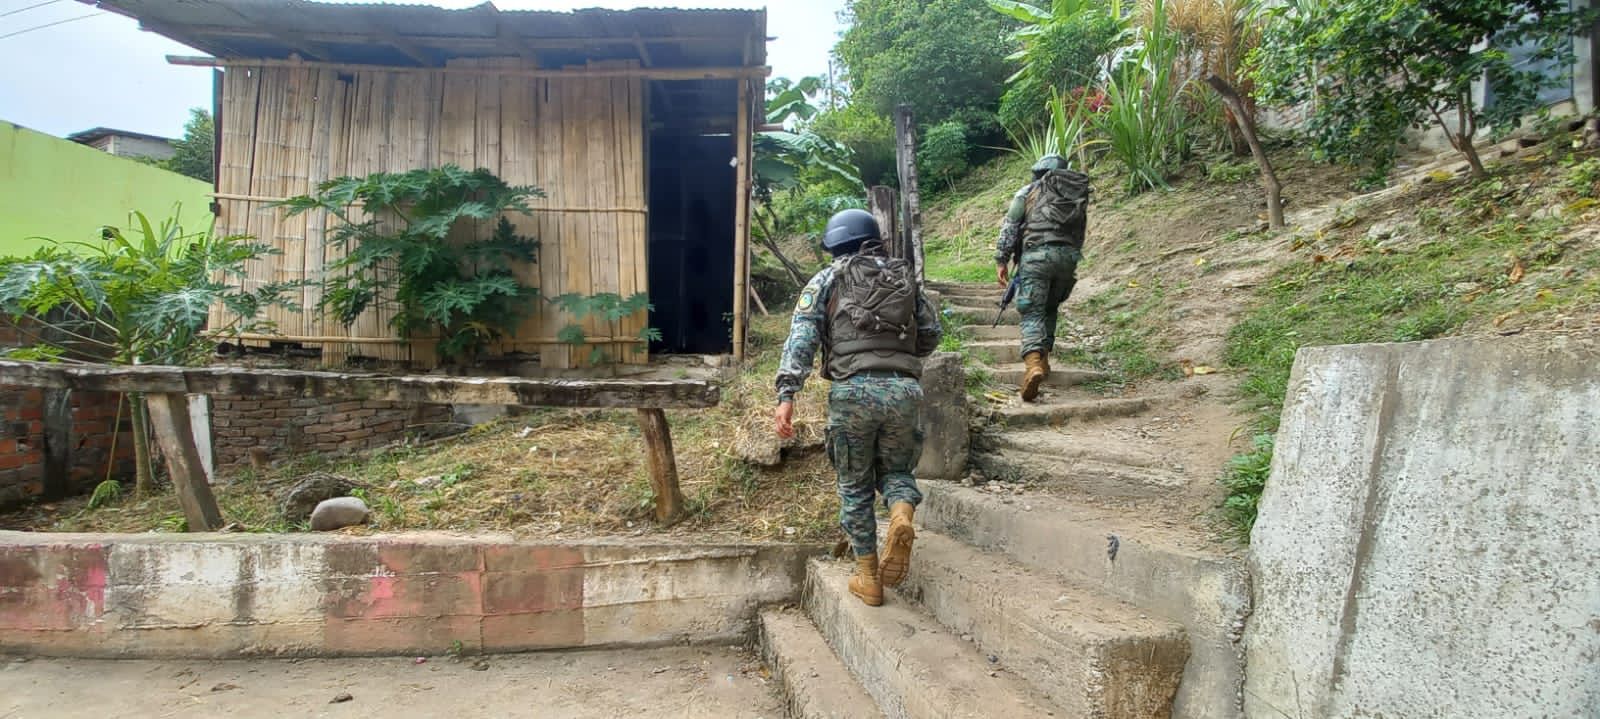 Equador ataca o narcotráfico e o crime na fronteira com Colômbia